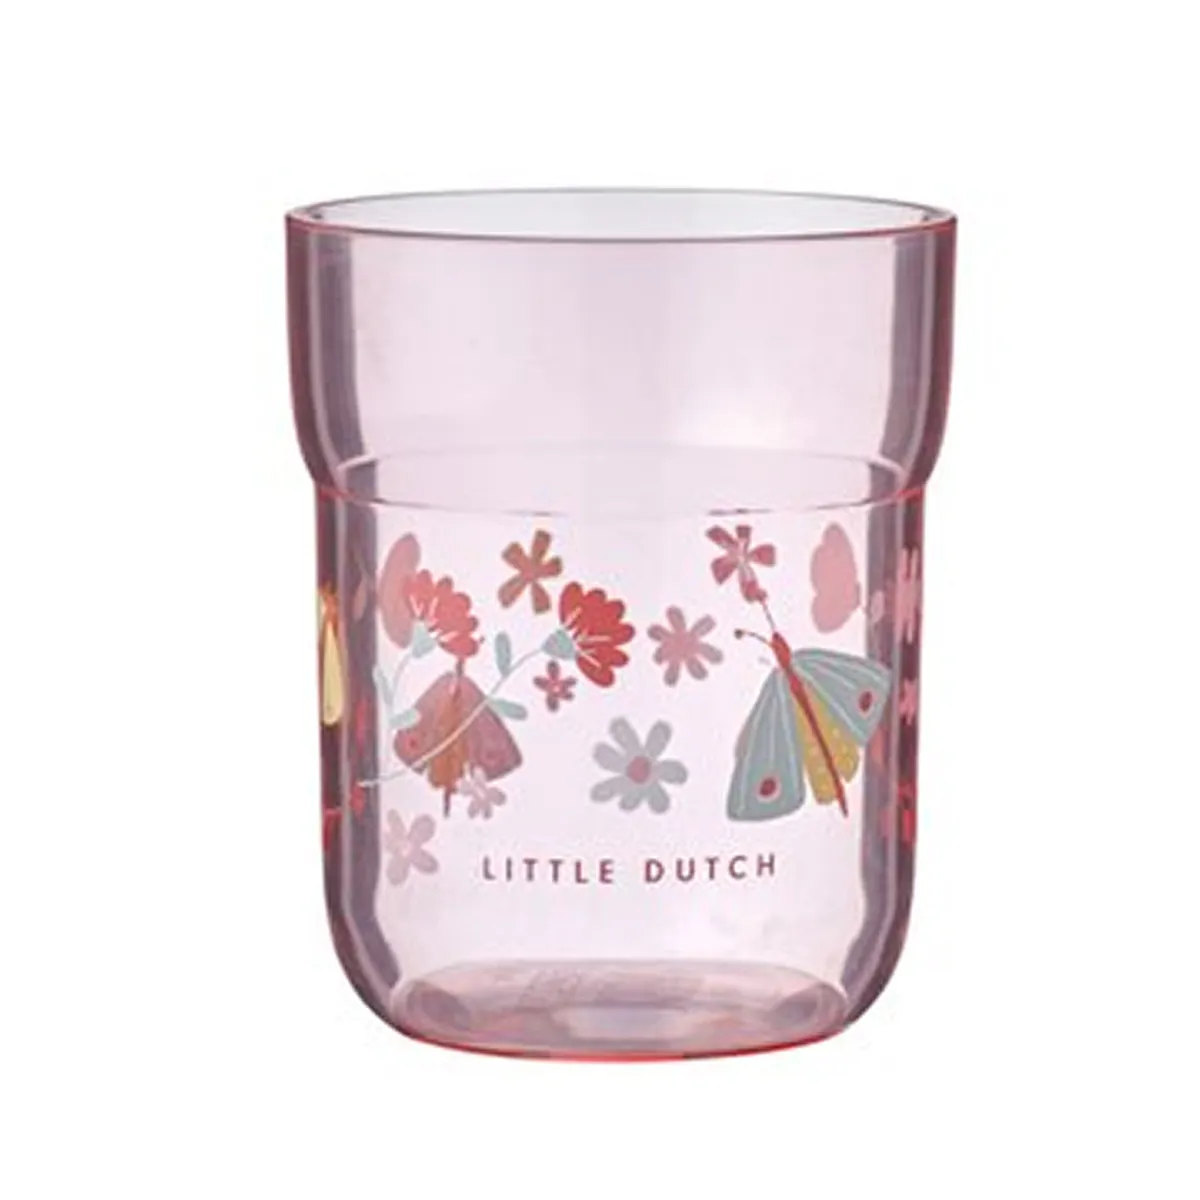 Little Dutch čaša Flowers&Butterflies